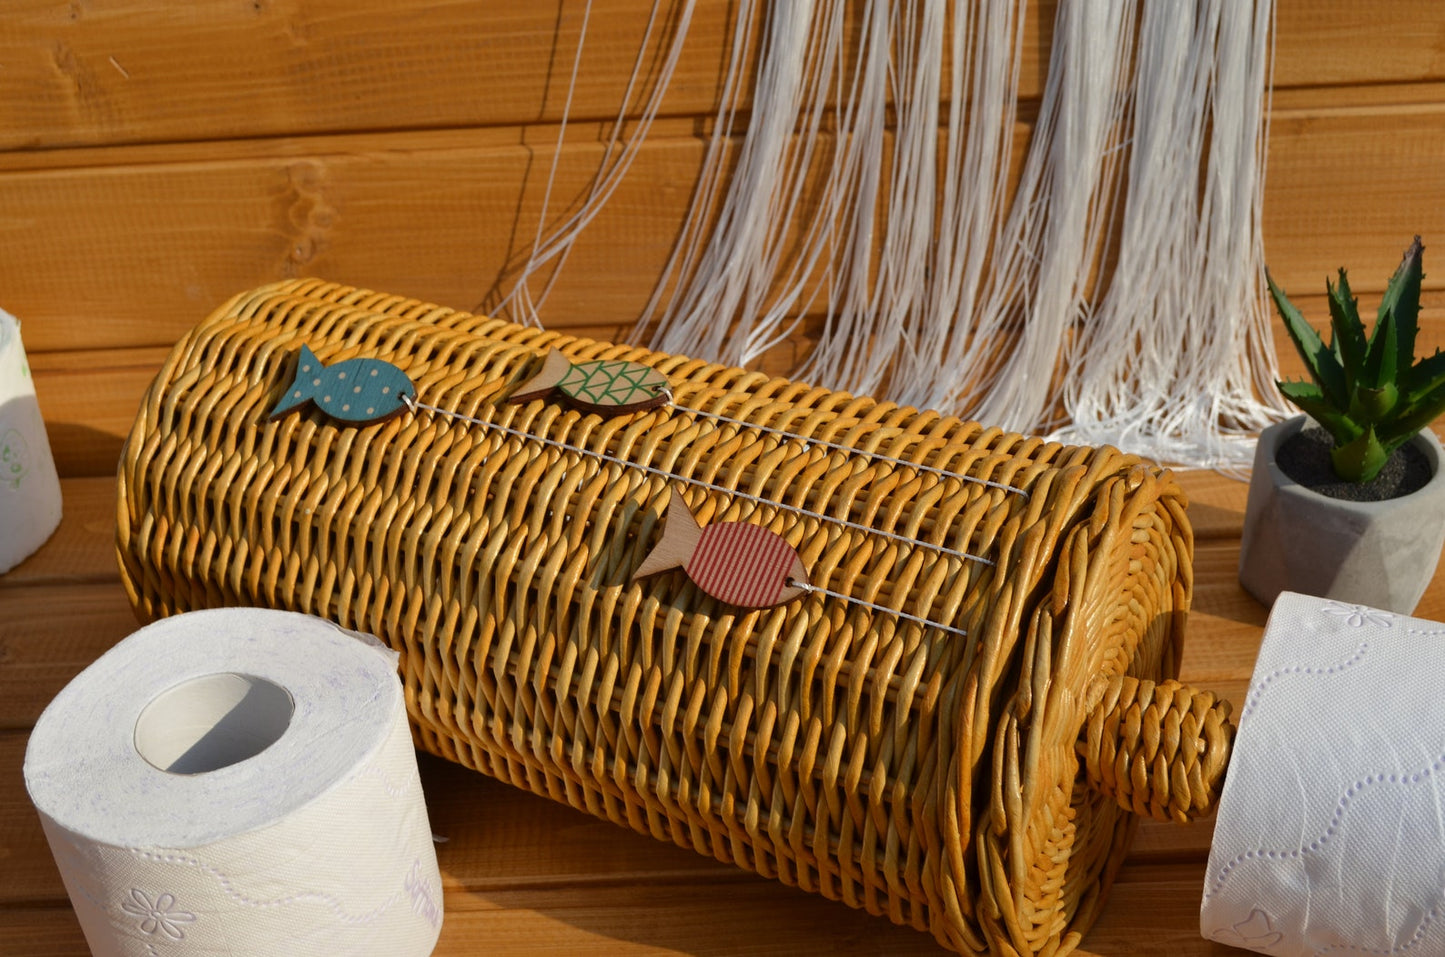 トイレットペーパー収納カゴ 蓋付 予備ロールホルダー シンプルで馴染みやすい天然素材の枝編み細工 for3